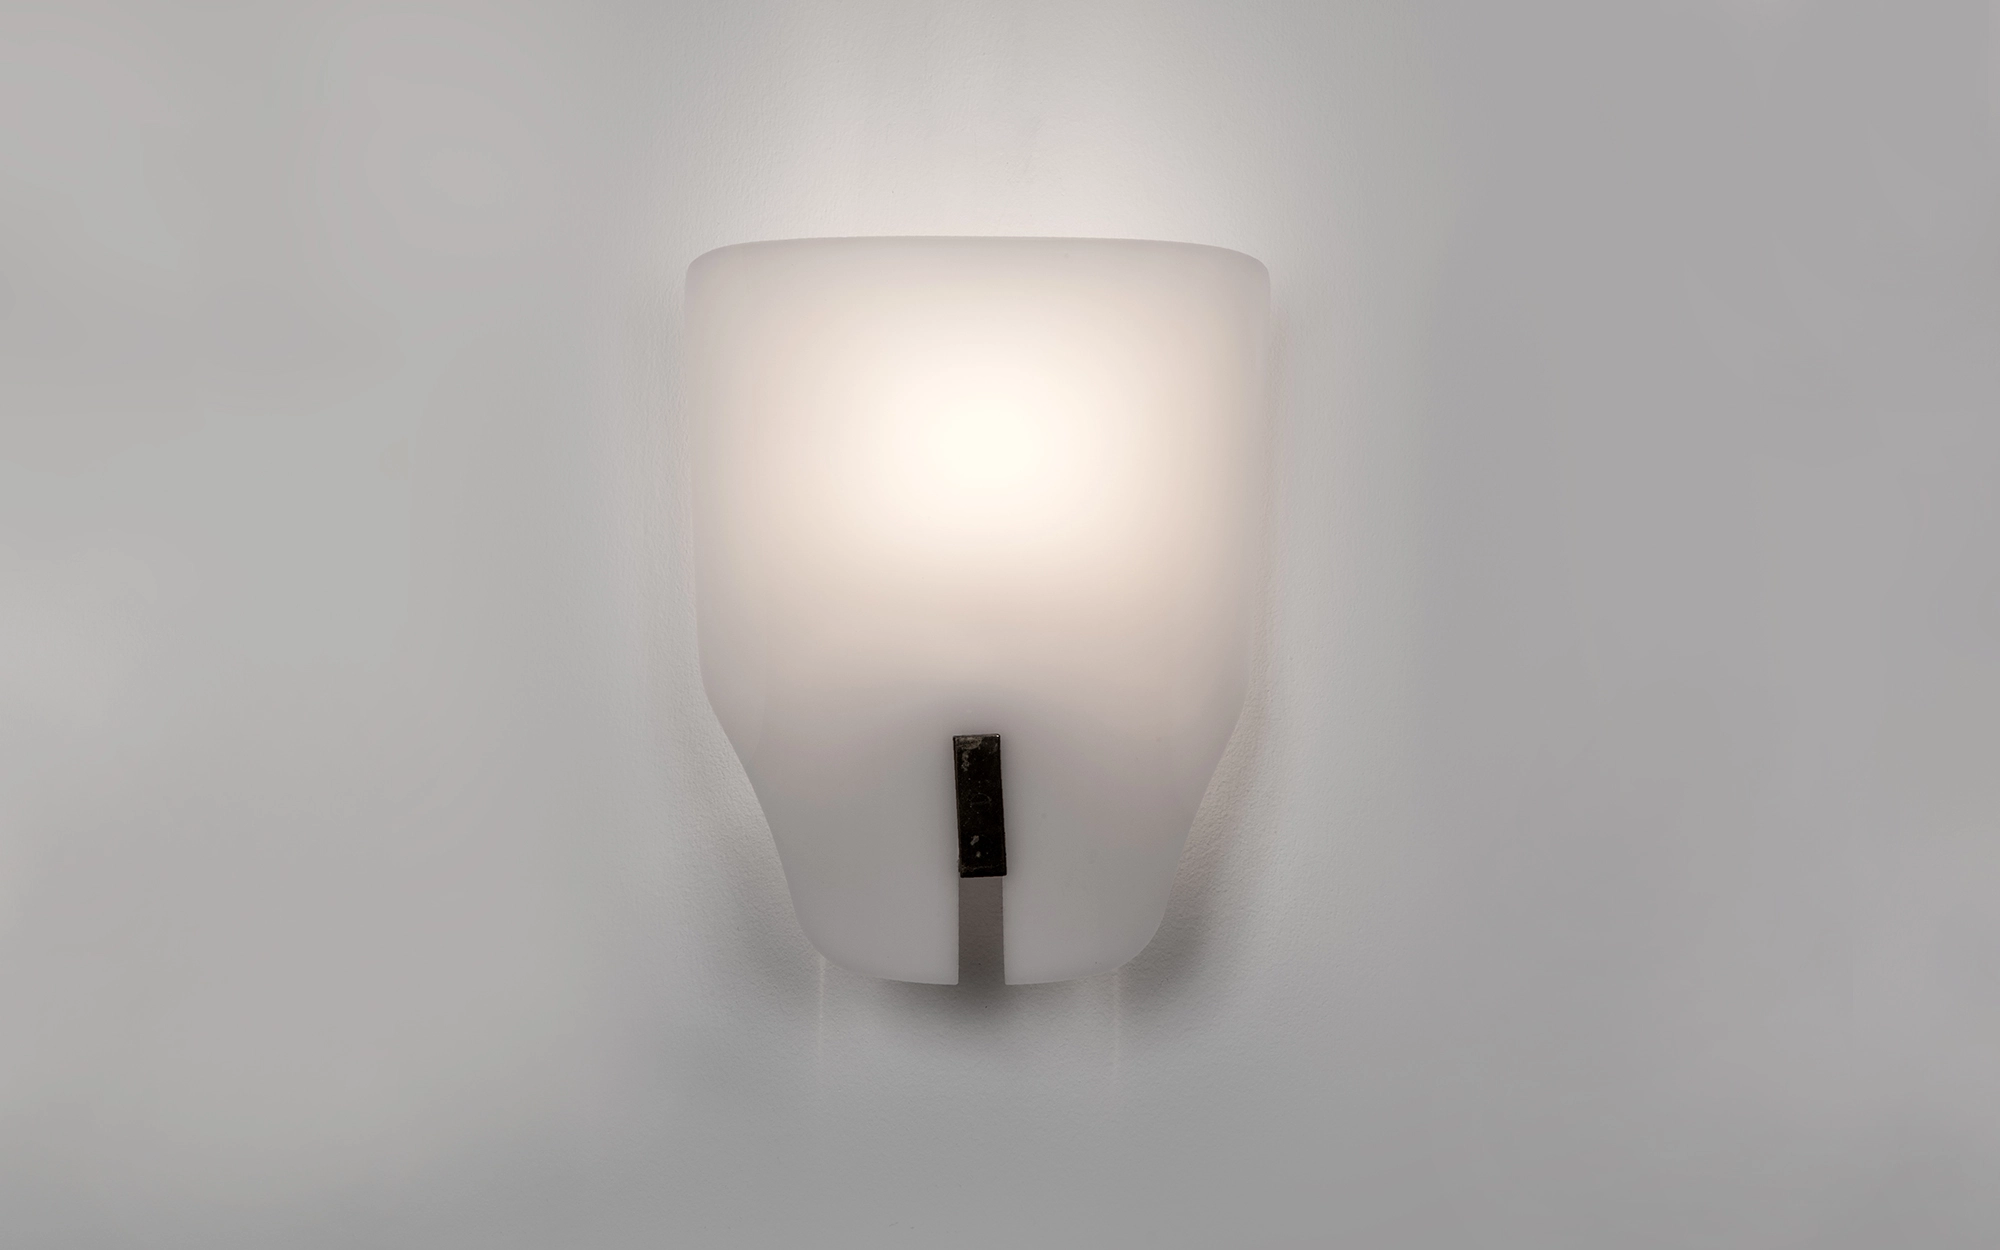 167px - Gino Sarfatti - Table light - Galerie kreo